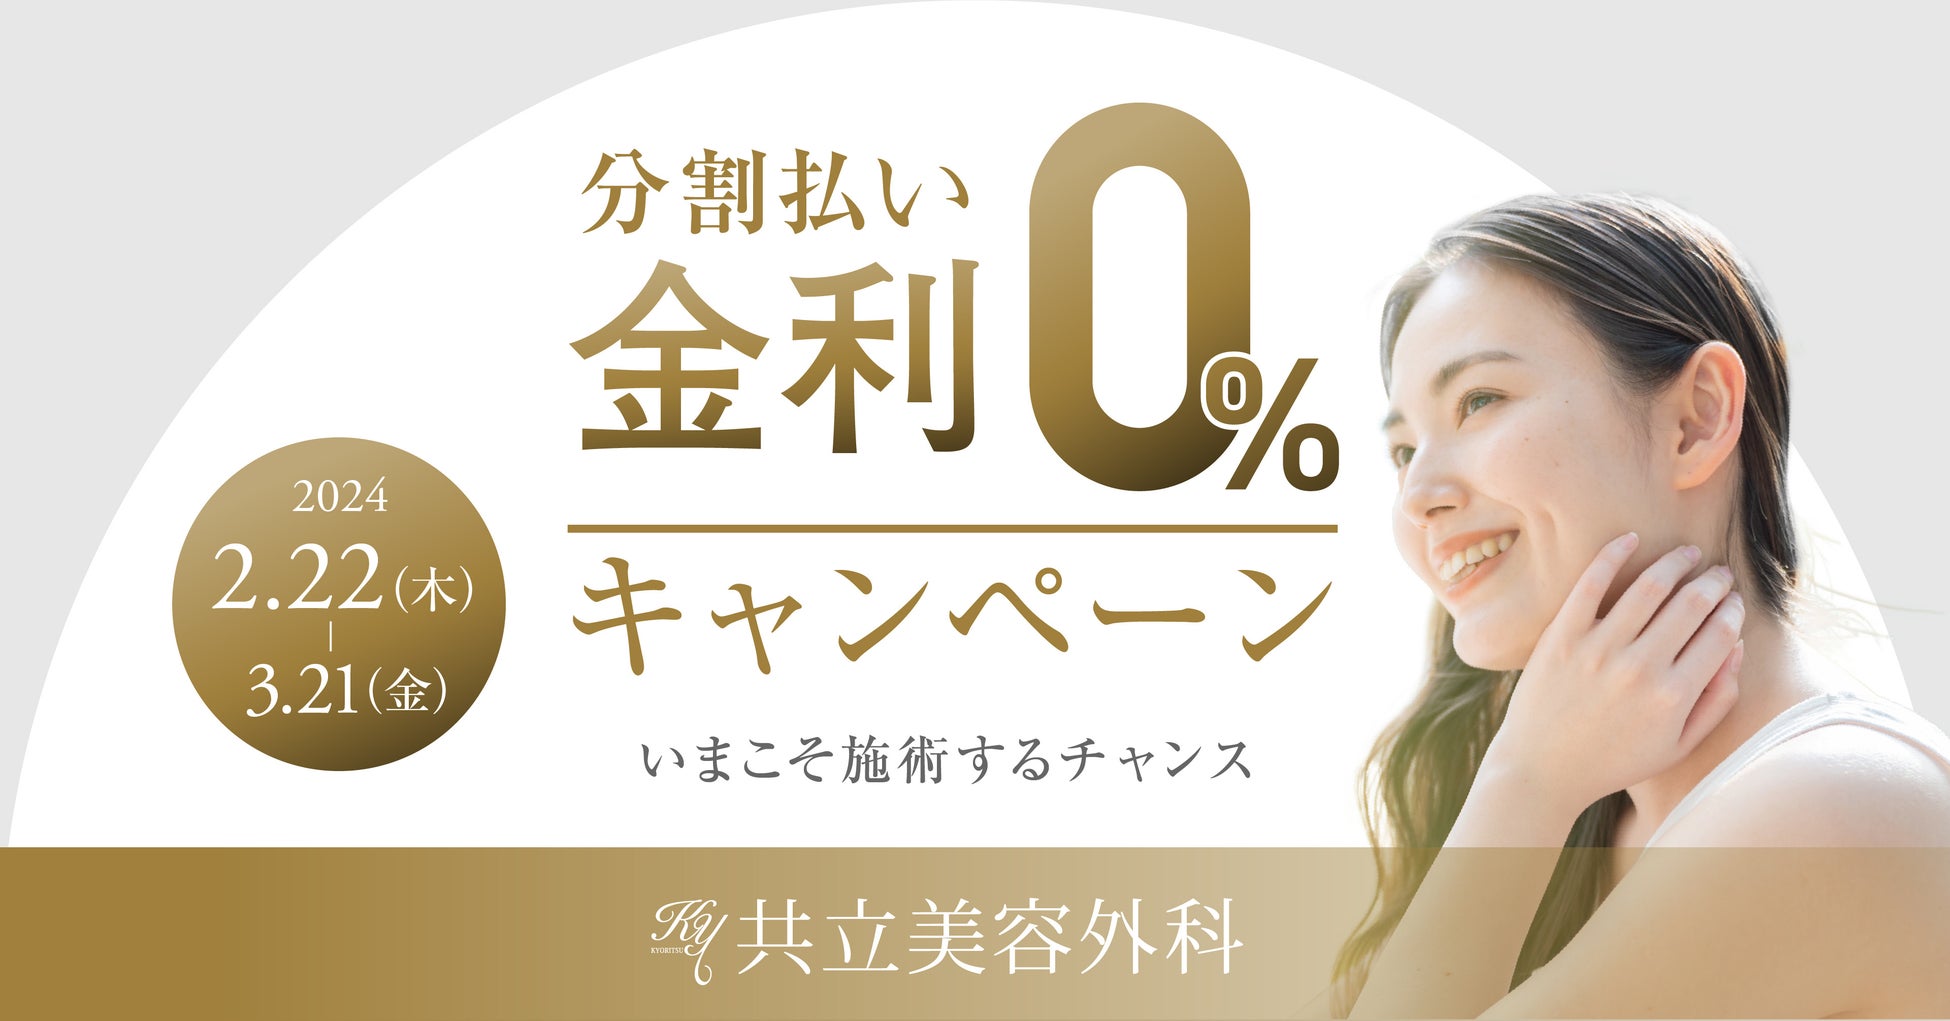 リカバリーシューズのパイオニアOOFOS®、パフォーマンスソックスブランドのFeetures®より日本限定モデルが登場。